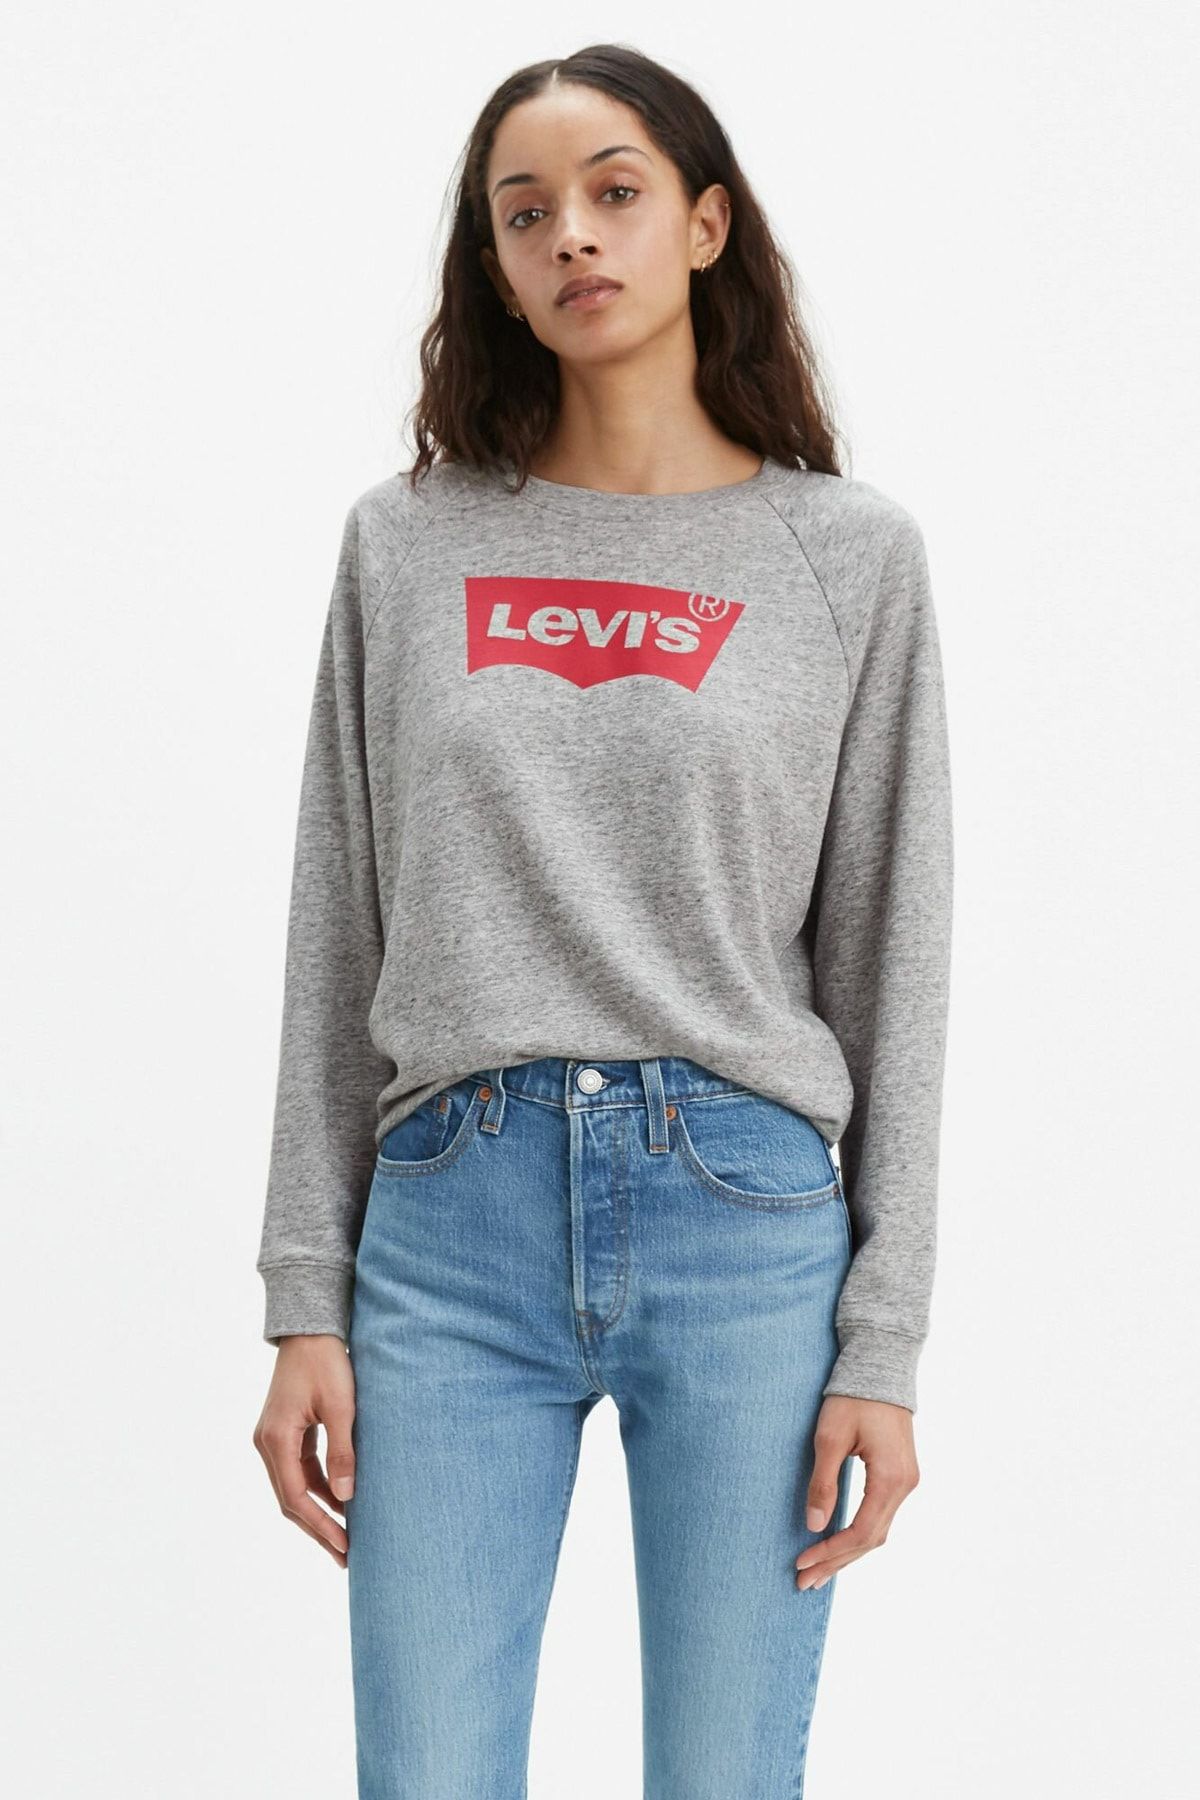 Levi's Kadın Relaxed Graphic Crew Fleece Good Gri Kadın Sweatshirt 2971700610